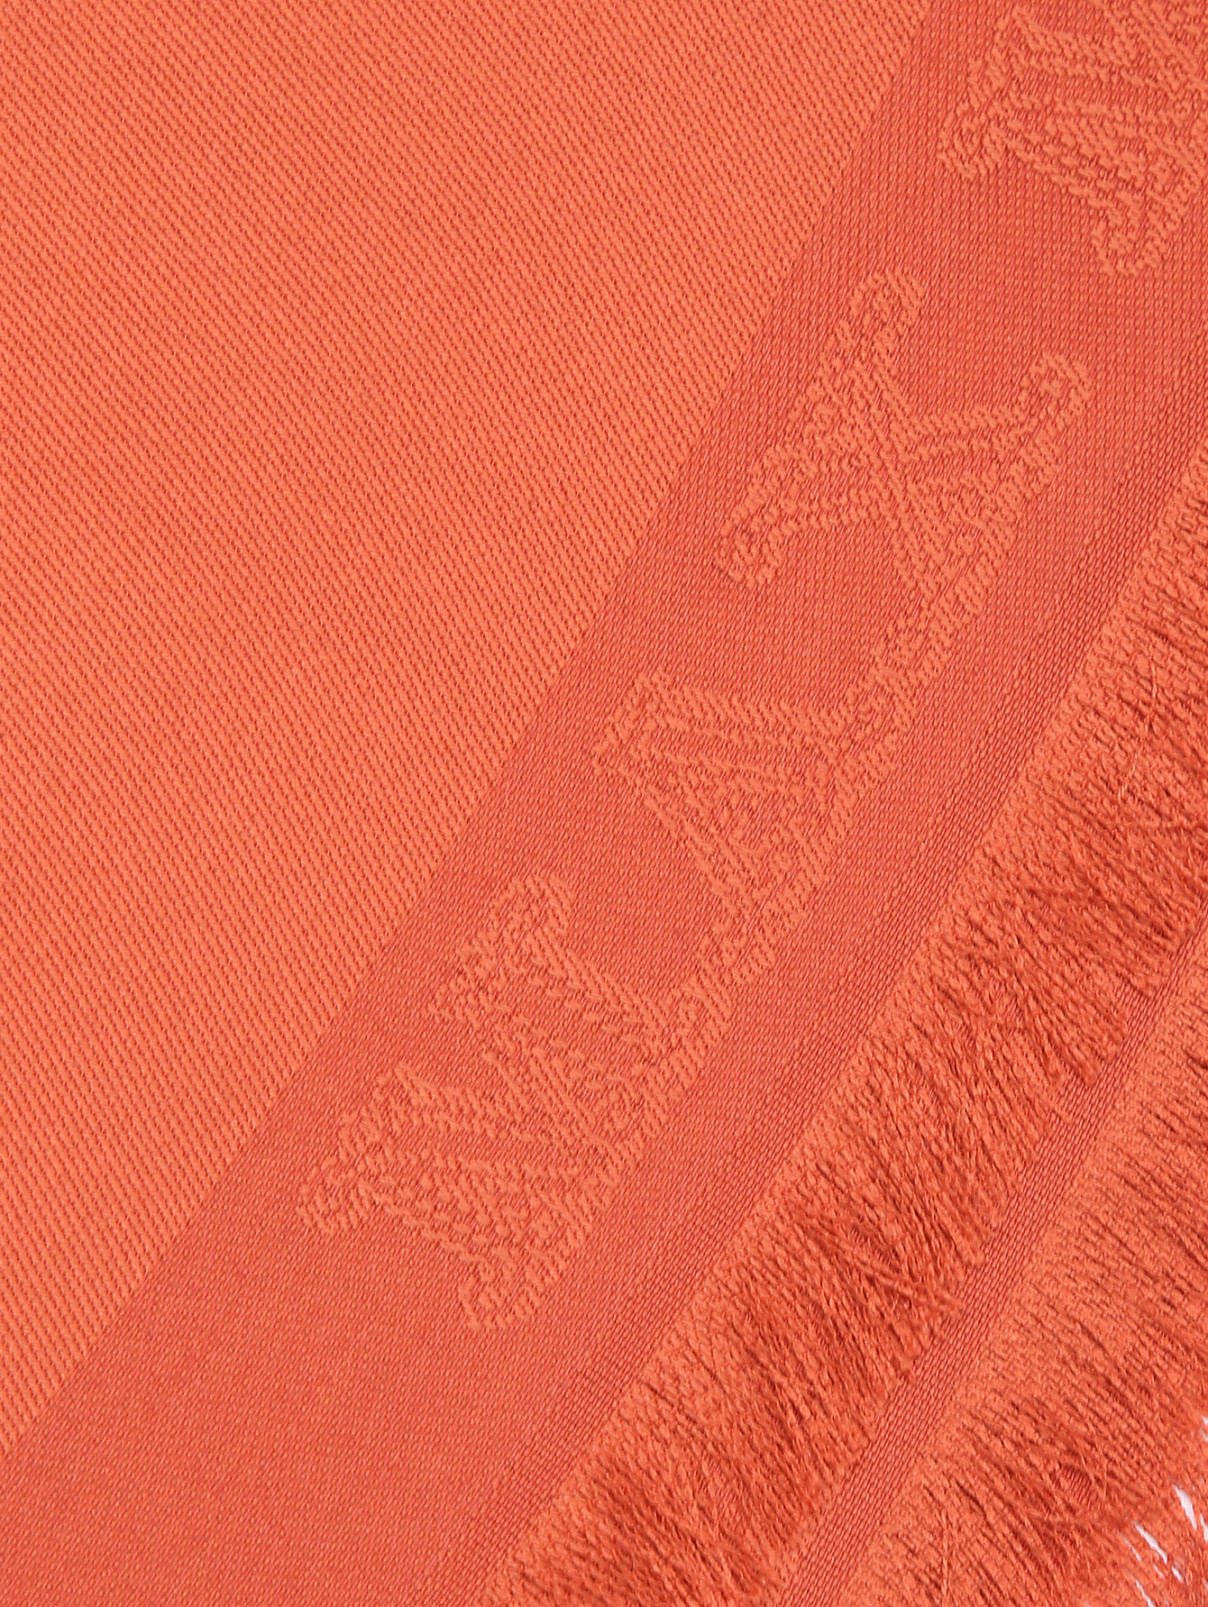 Шарф из шелка с логотипом Max Mara  –  Деталь  – Цвет:  Оранжевый